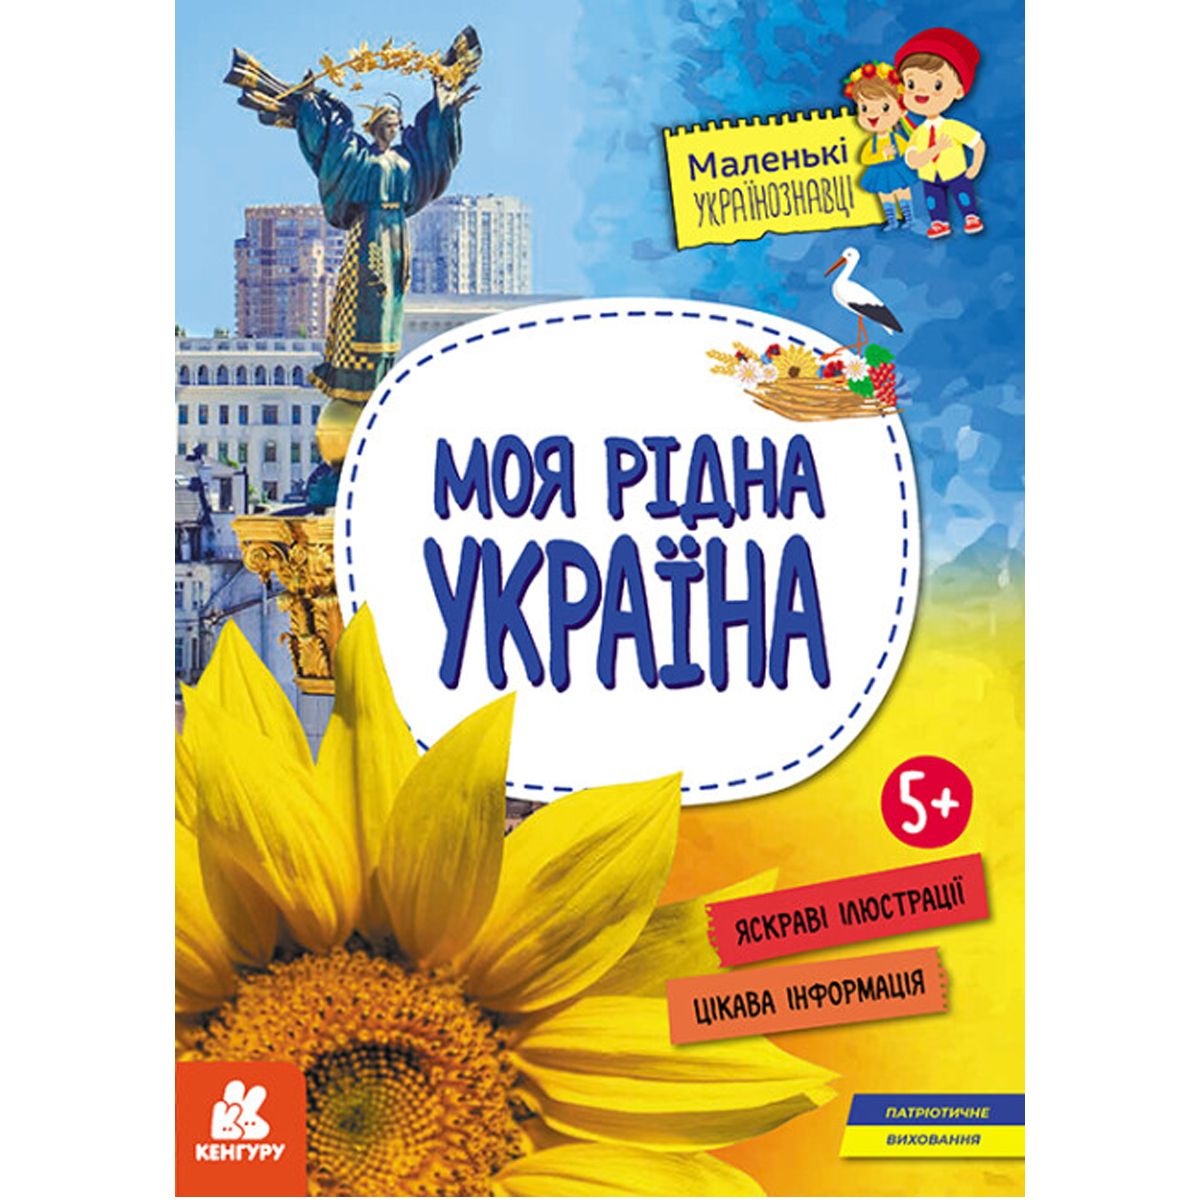 Книга "Маленькие украиноведы.  Моя родная Украина" (укр)